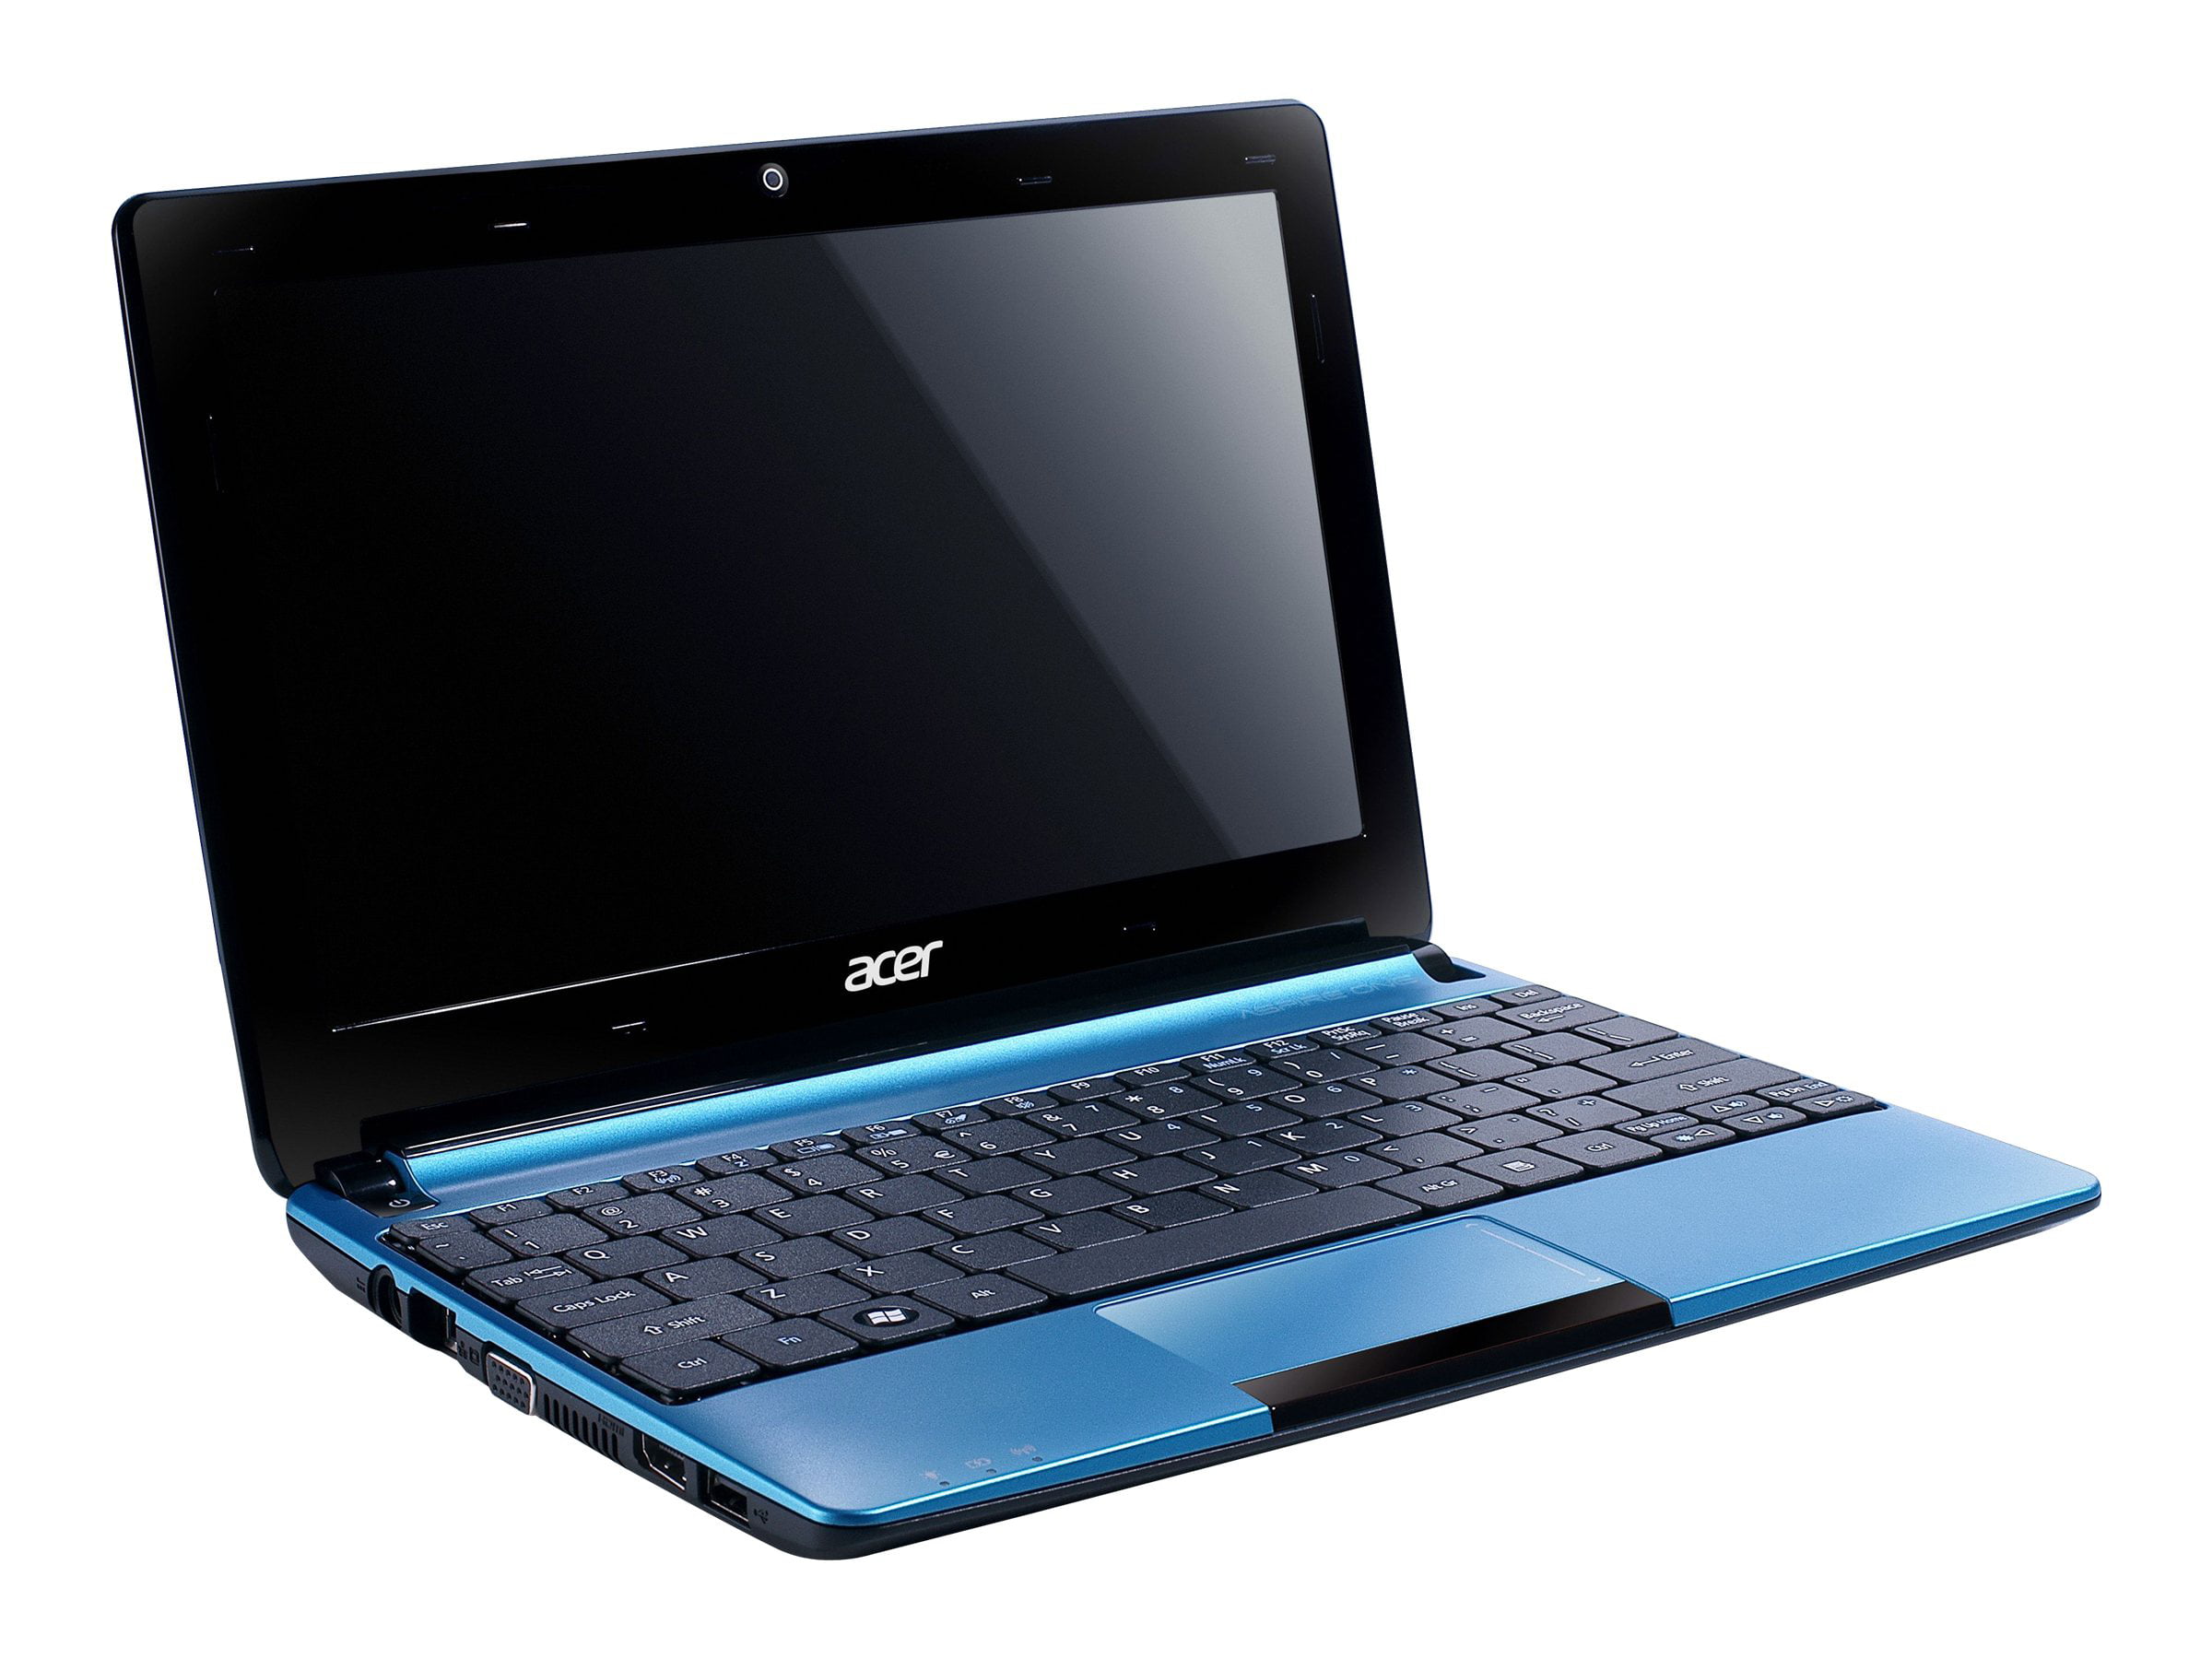 Acer Aspire ONE D270-1865 - Intel N2600 / 1.6 GHz - Windows 7 Starter 32-bit - GMA 3600 - 1 GB RAM - 320 GB HDD - 10.1" CrystalBrite 1024 x 600 - aquamarine blue - Walmart.com